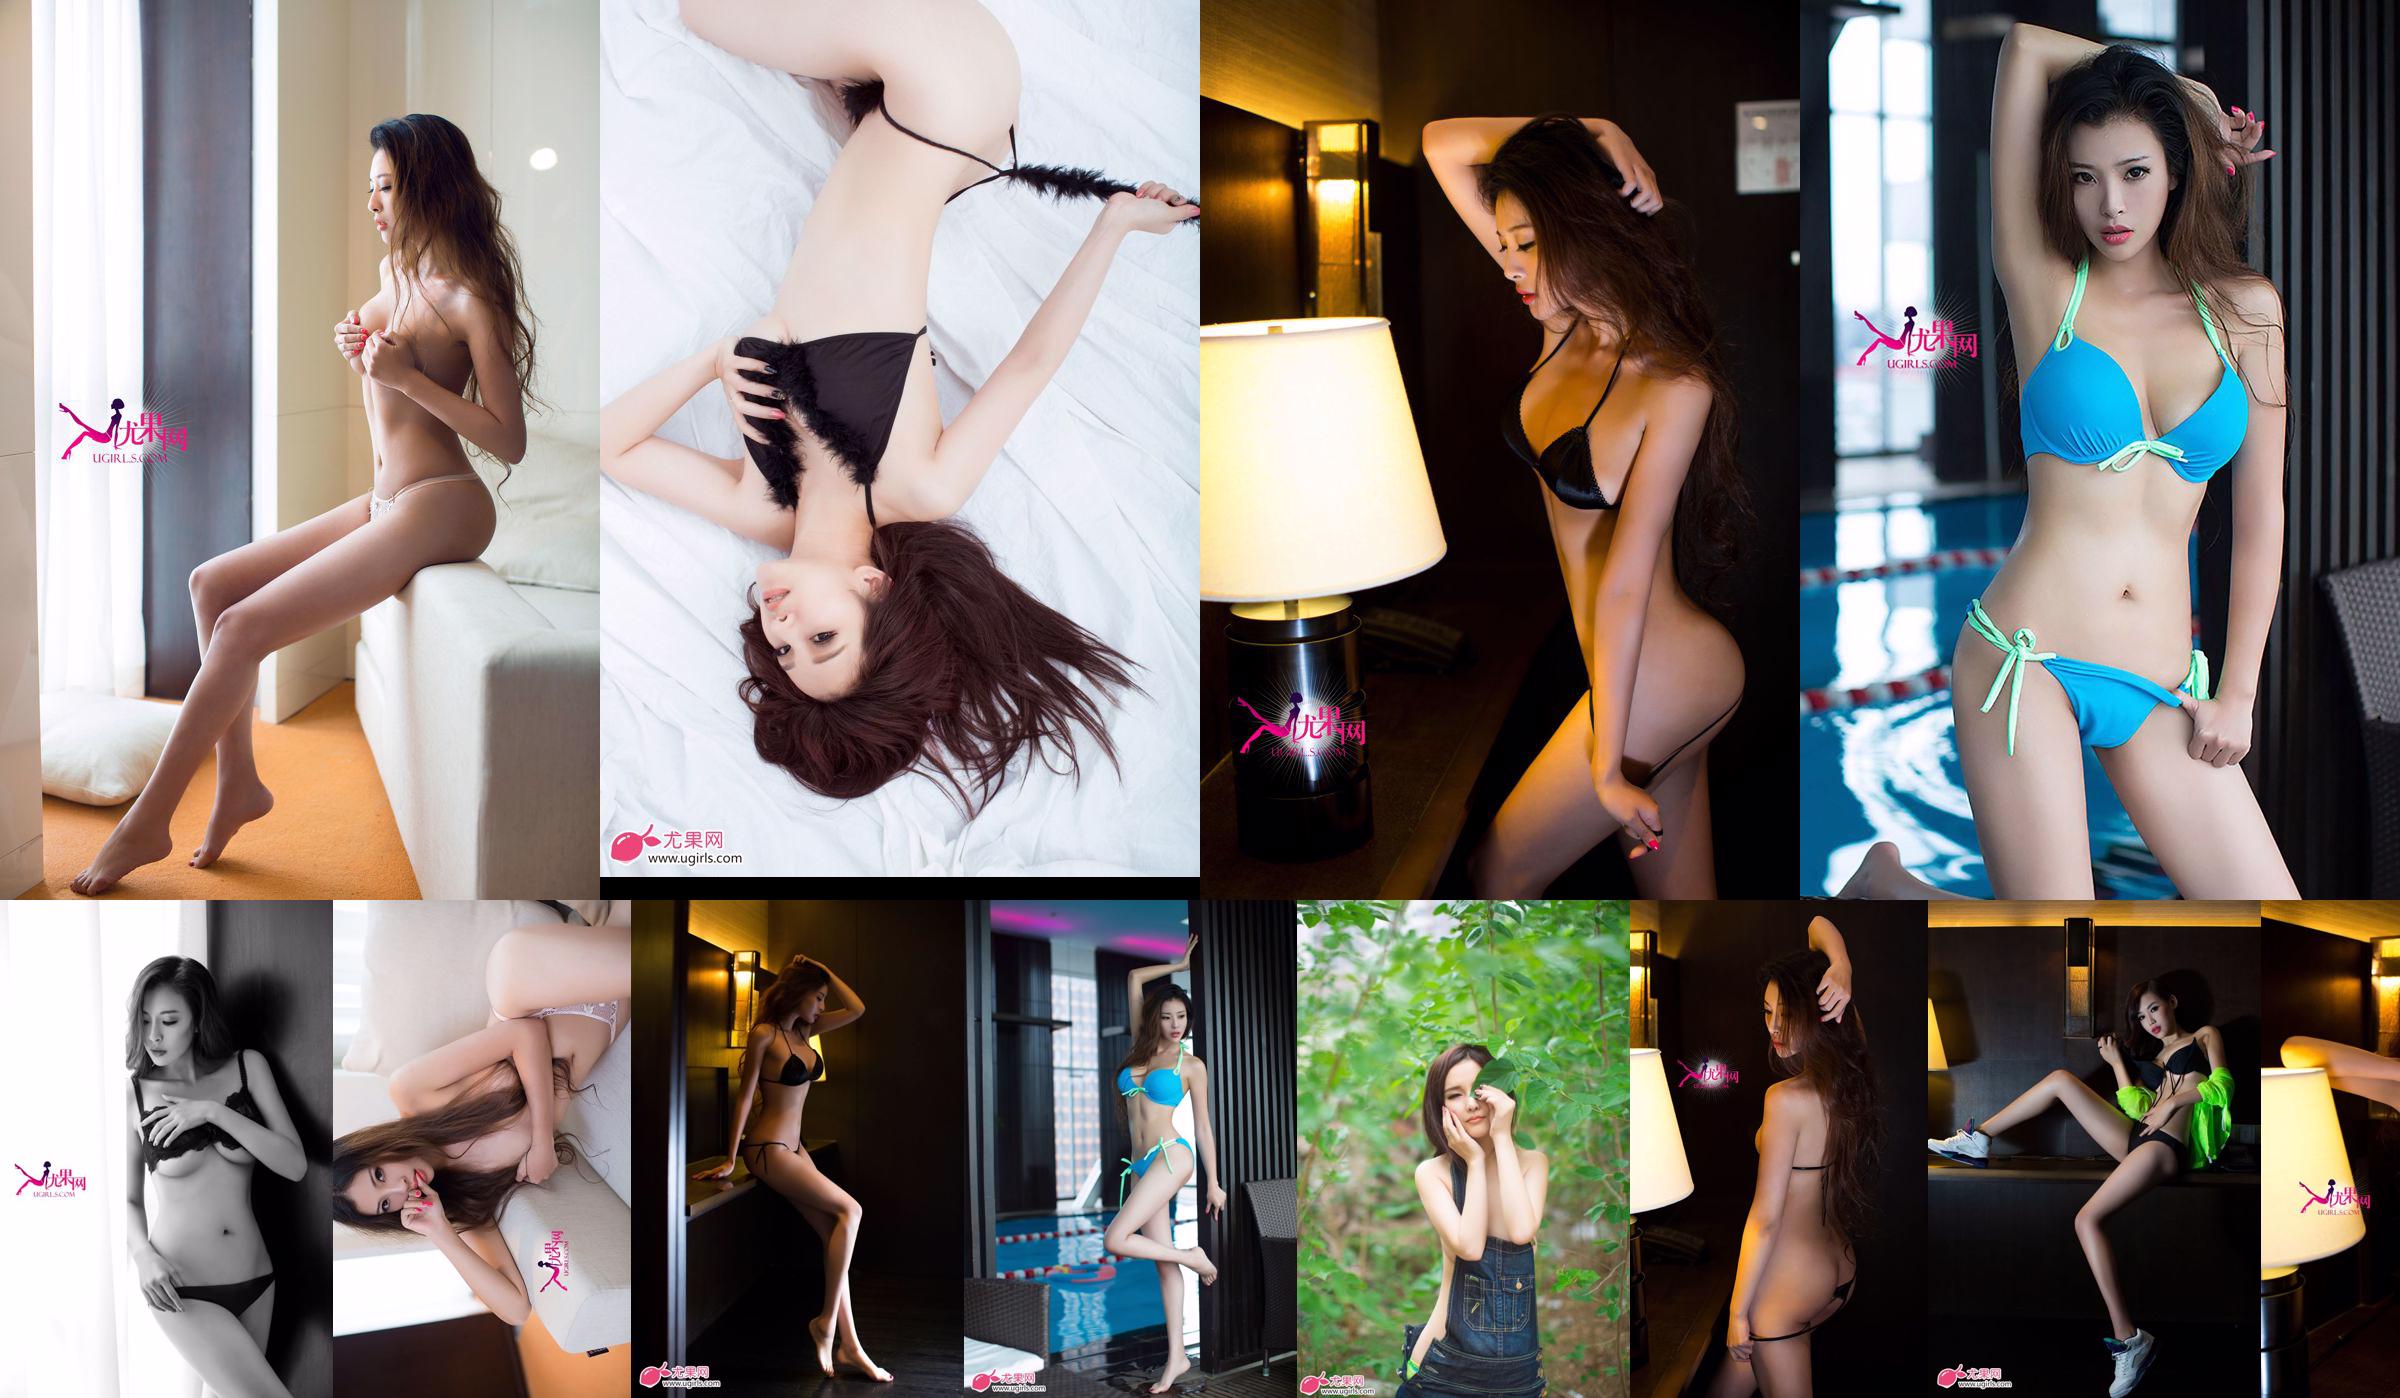 [Ugirls] E043 Langbenig model Zeng Chen "Summer Sexy" No.56370a Pagina 1